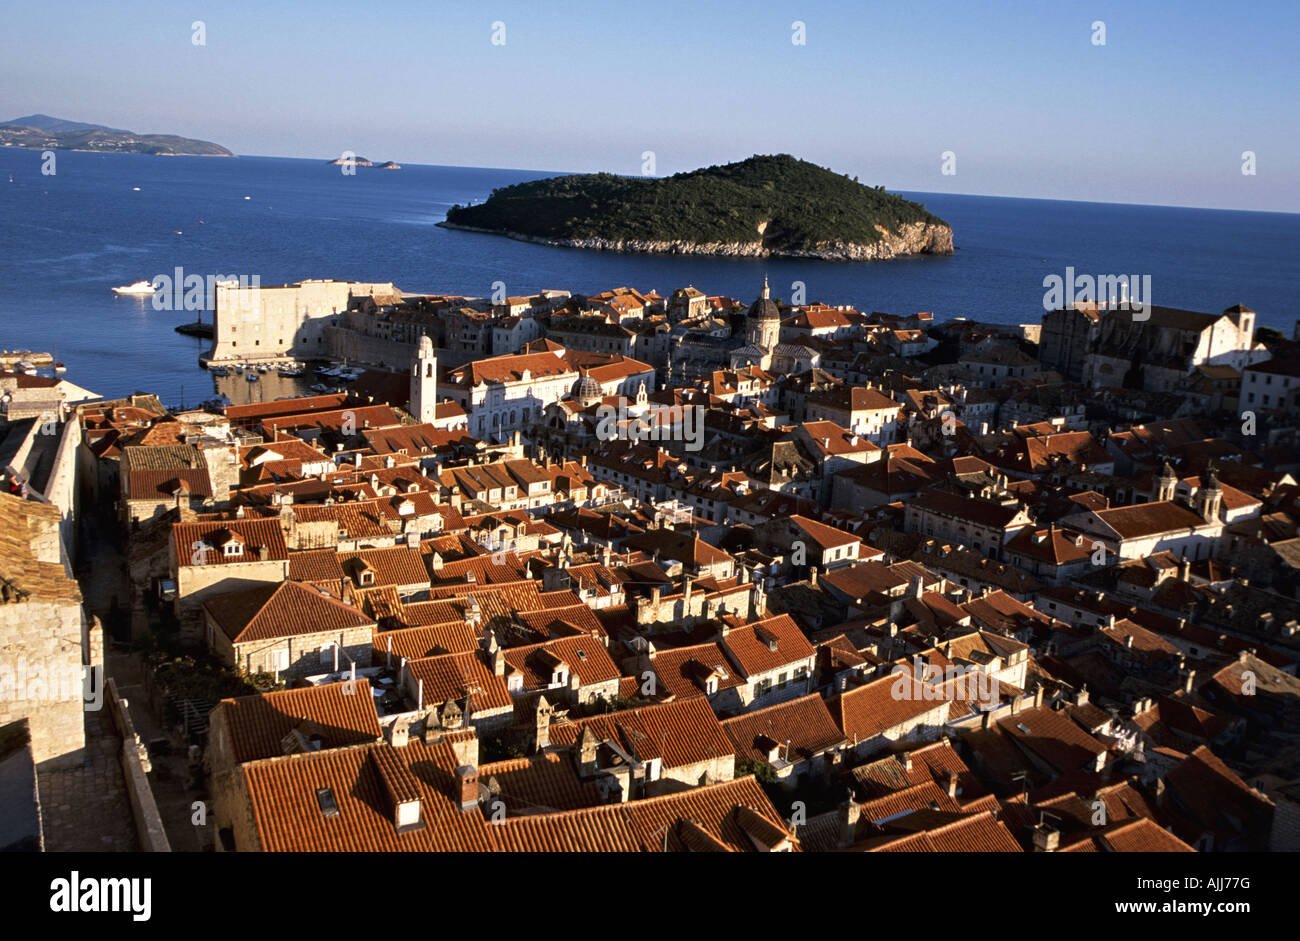 Kroatien Dalmatien Dubrovnik - Altstadt von Dubrovnik | Croazia Dalmazia Dubrovnik - Centro storico della città di Dubrovnik Foto Stock